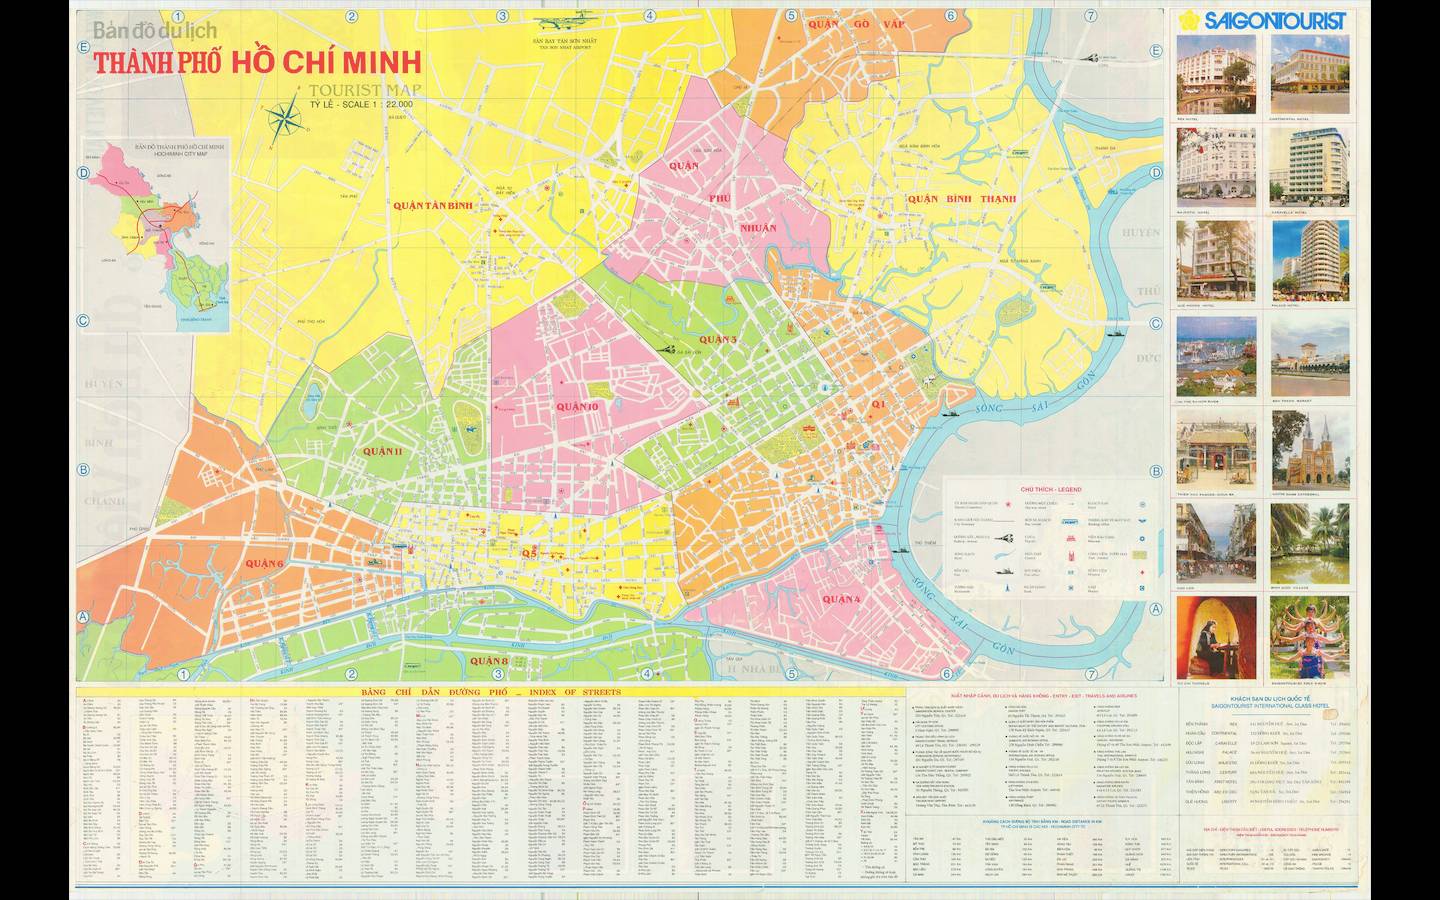 Bản đồ khổ lớn TP HCM với các chi tiết về địa hình, đường phố, các khu dân cư và điểm tham quan nổi tiếng, là công cụ hữu ích giúp bạn tìm hiểu rõ hơn về thành phố này. Những thông tin chi tiết được cập nhật sẽ giúp bạn có chuyến đi suôn sẻ và thú vị hơn.